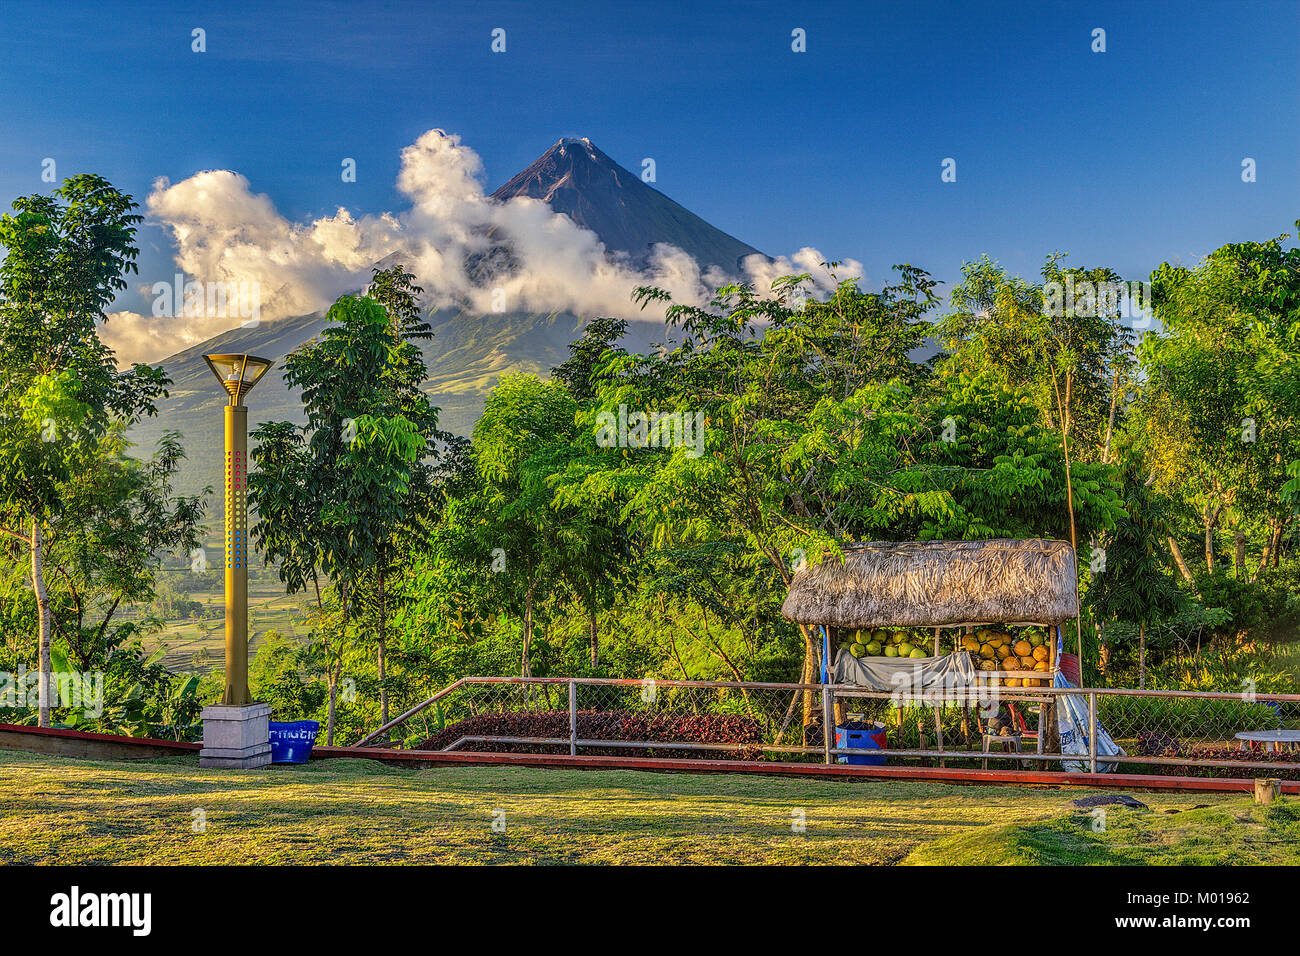 Il monte Mayon stratovulcano vista dal monte Mayon Parco naturale area di visualizzazione nella centrale zona di Bikol di Albay regione meridionale dell'isola di Luzon, Philip Foto Stock